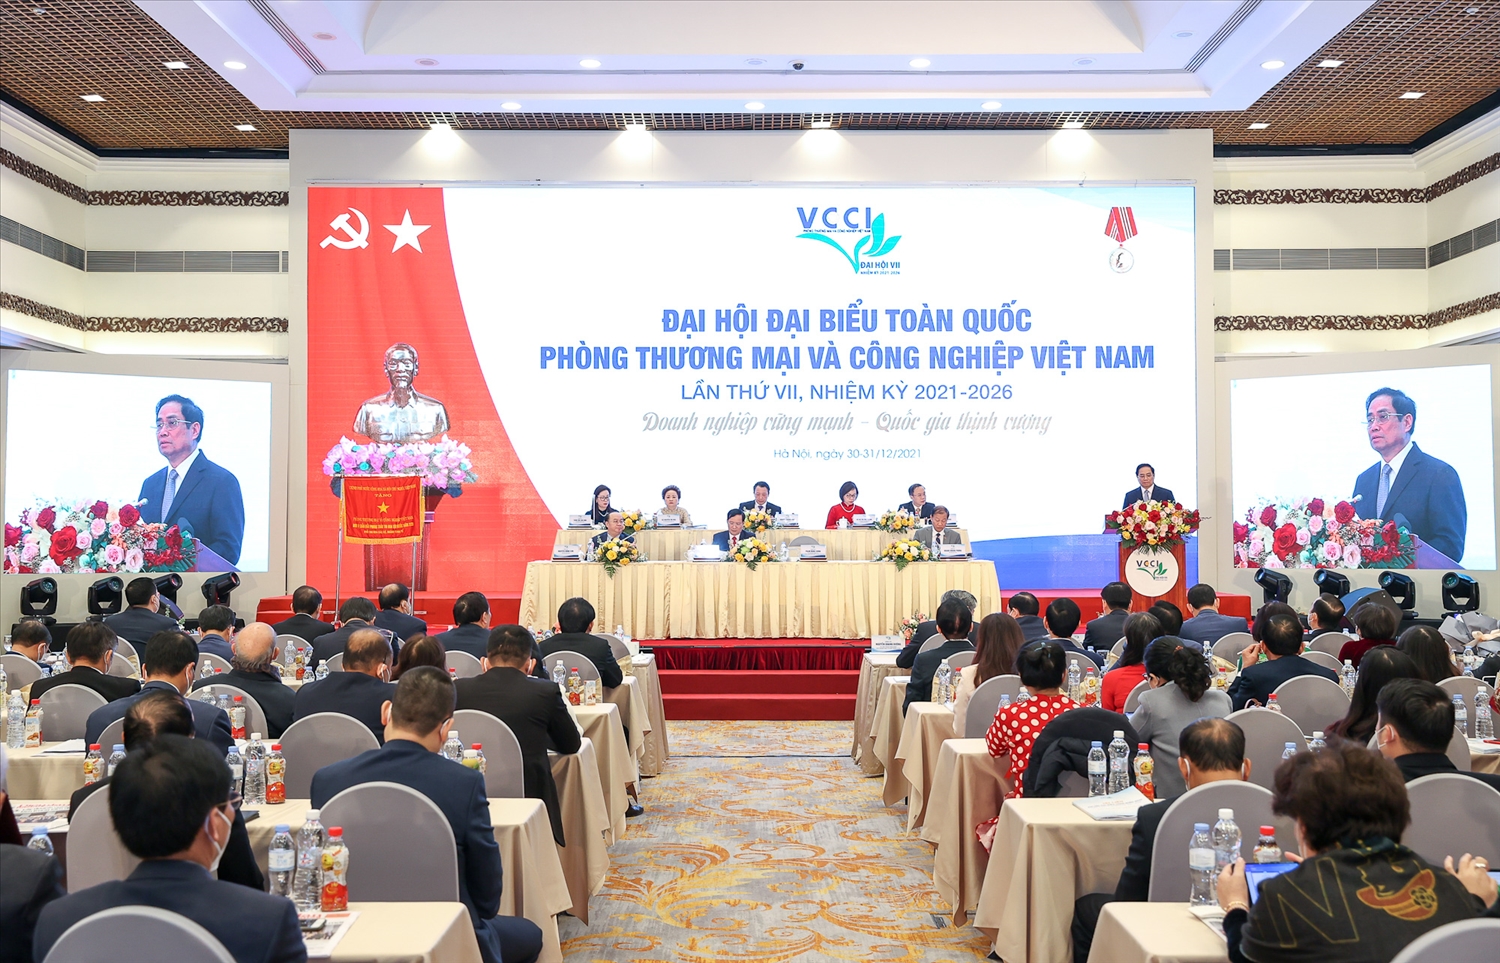 Đại hội đại biểu toàn quốc VCCI lần thứ VII, nhiệm kỳ 2021-2026 diễn ra sáng 31/12 tại Hà Nội - Ảnh: VGP/Nhật Bắc